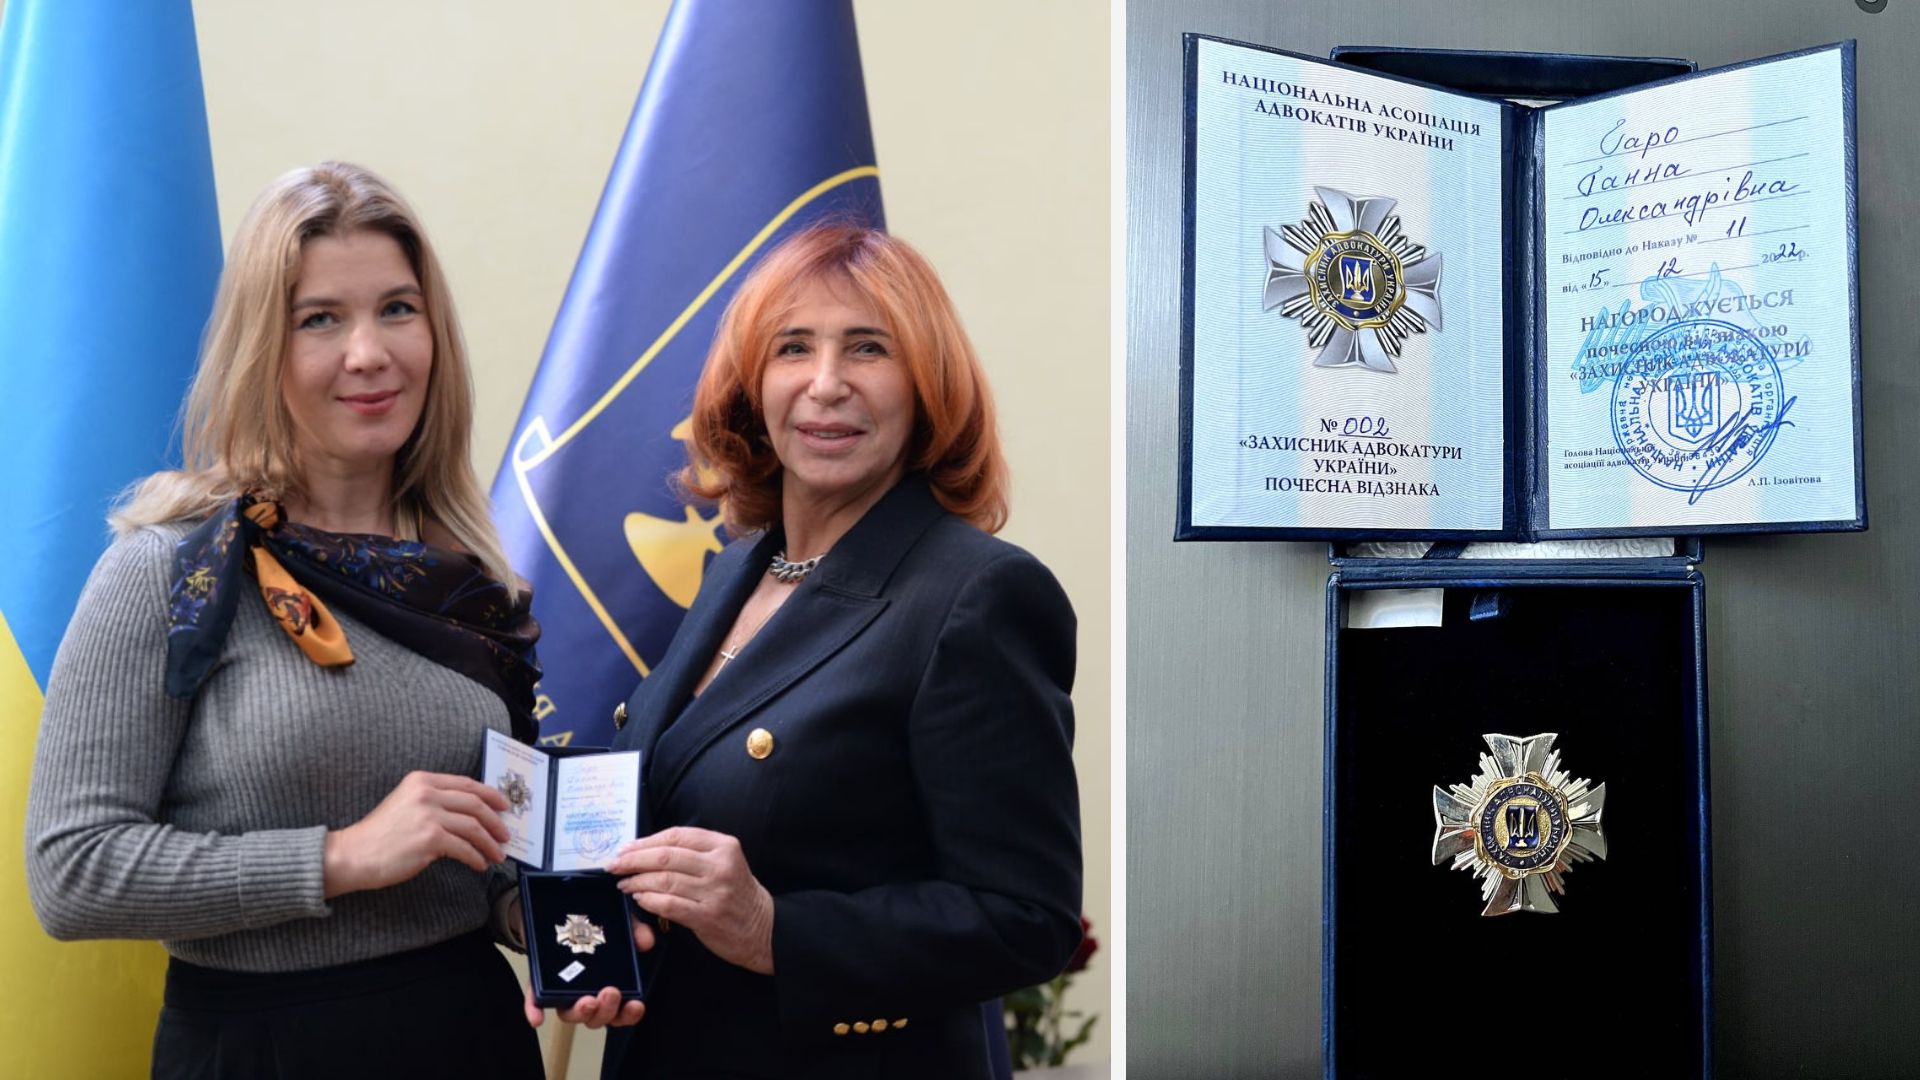 Ганну Гаро нагороджено почесною відзнакою «Захисник адвокатури України»